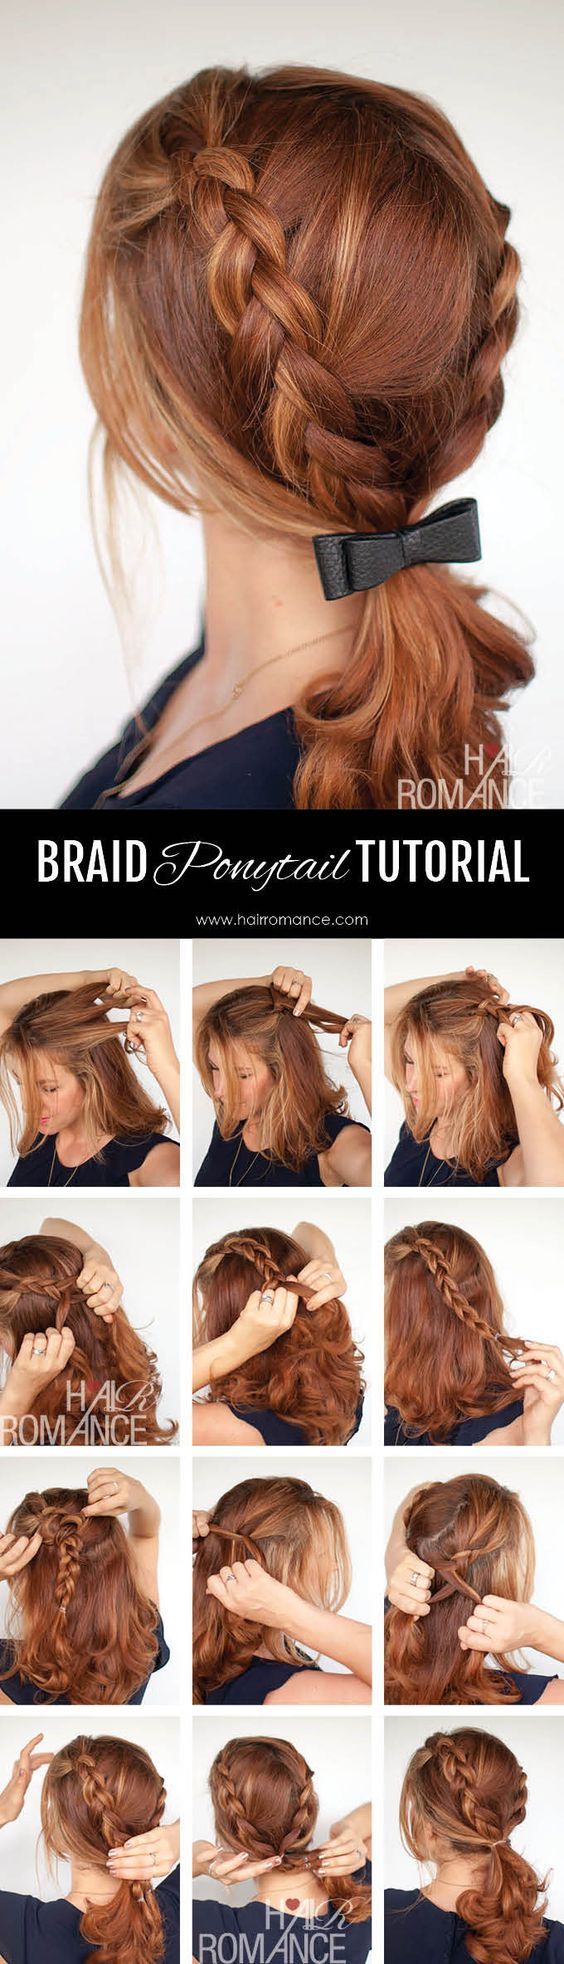 Hair Romance – Braid ponytail tutorial